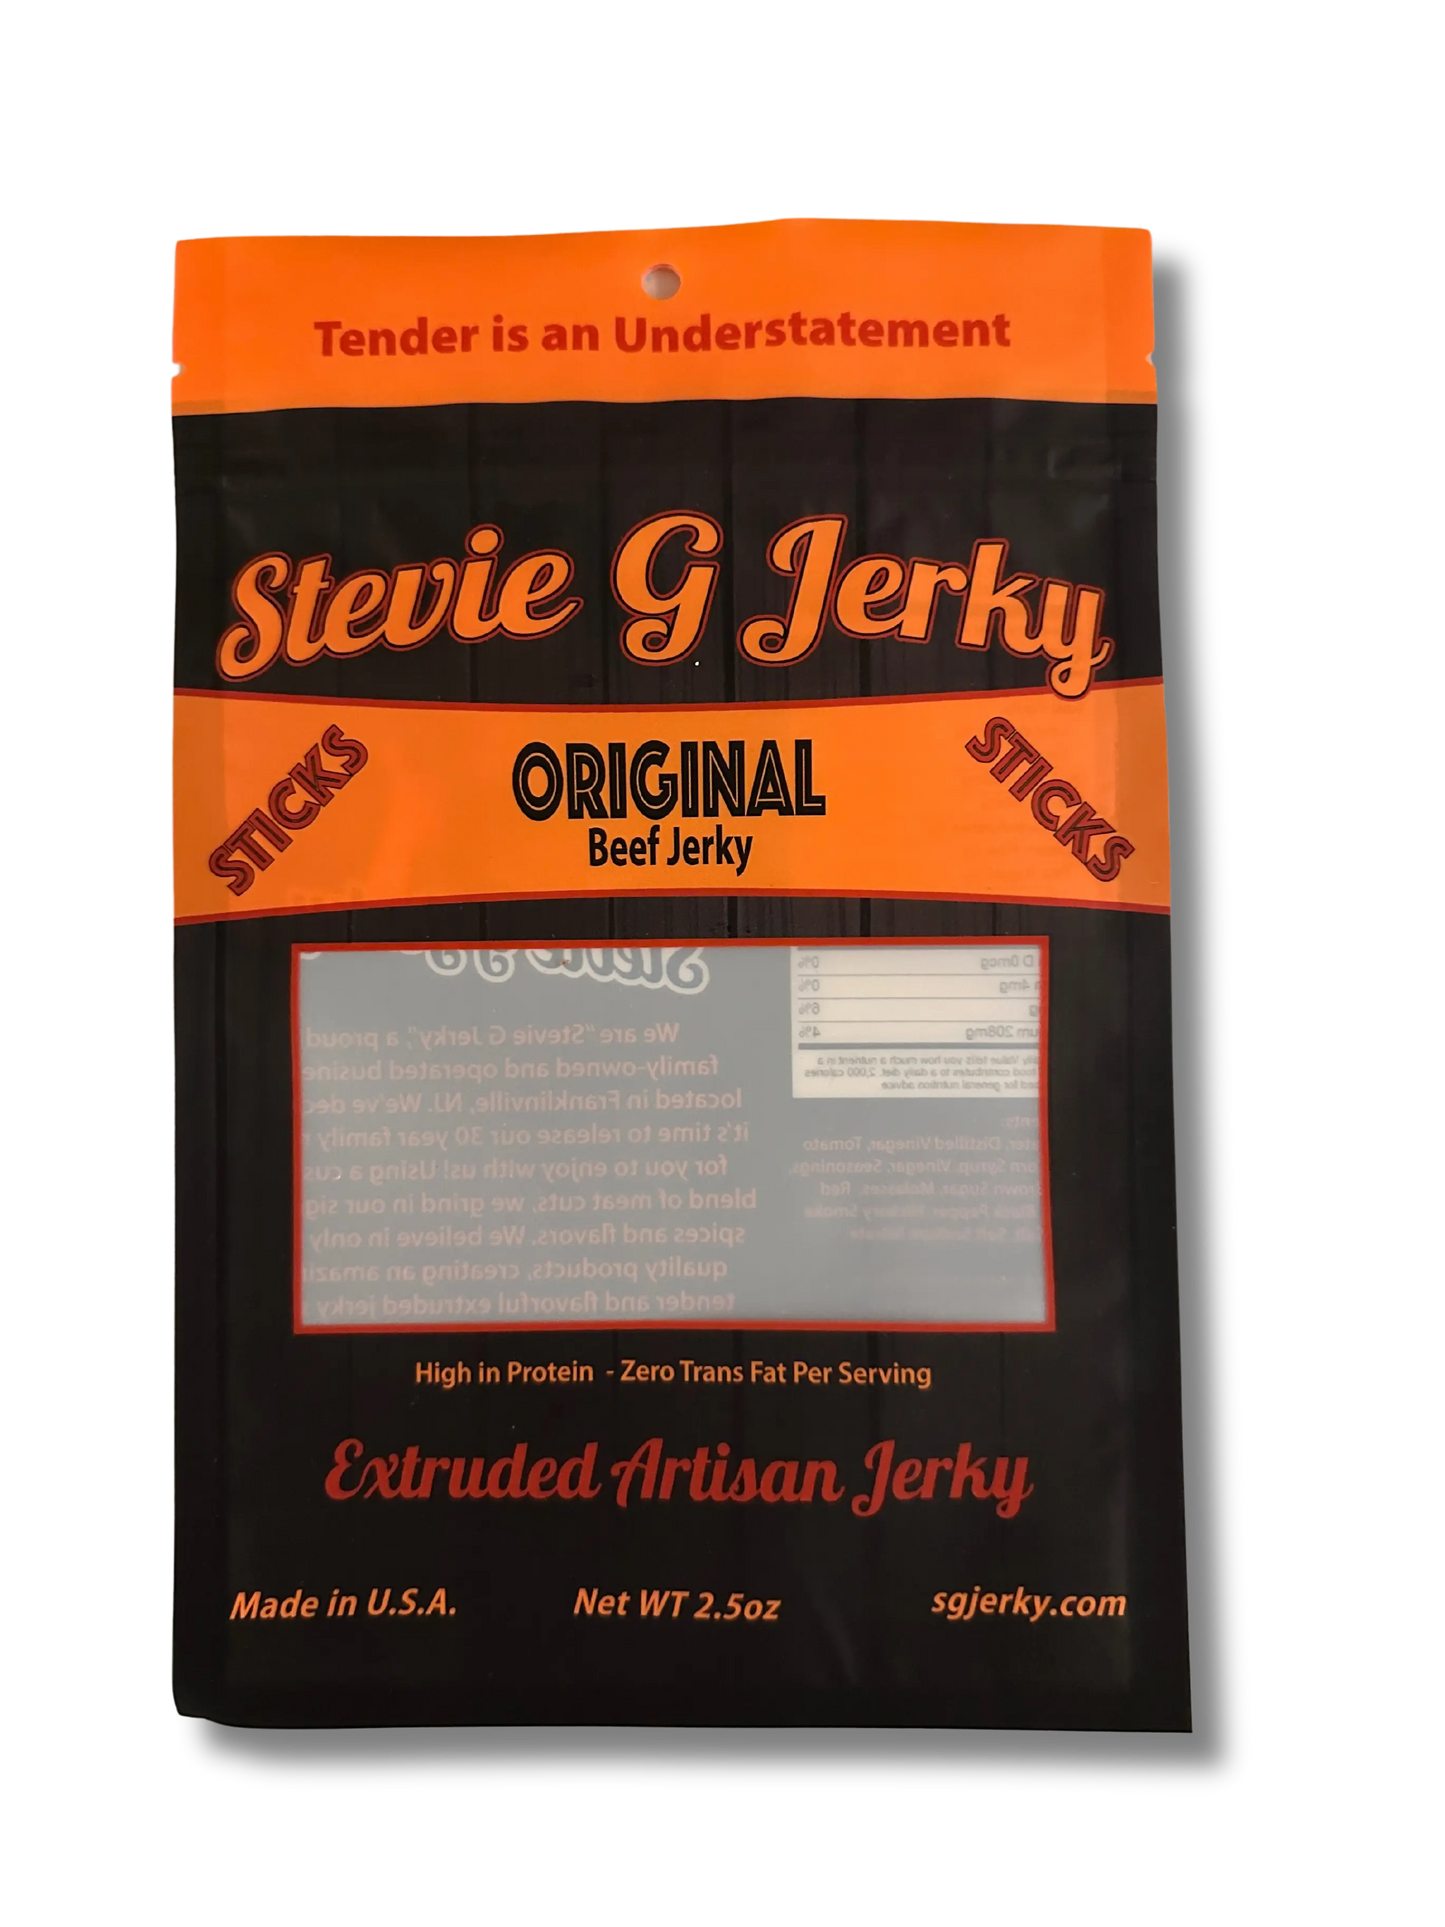 The OG Beef Jerky Bundle Package